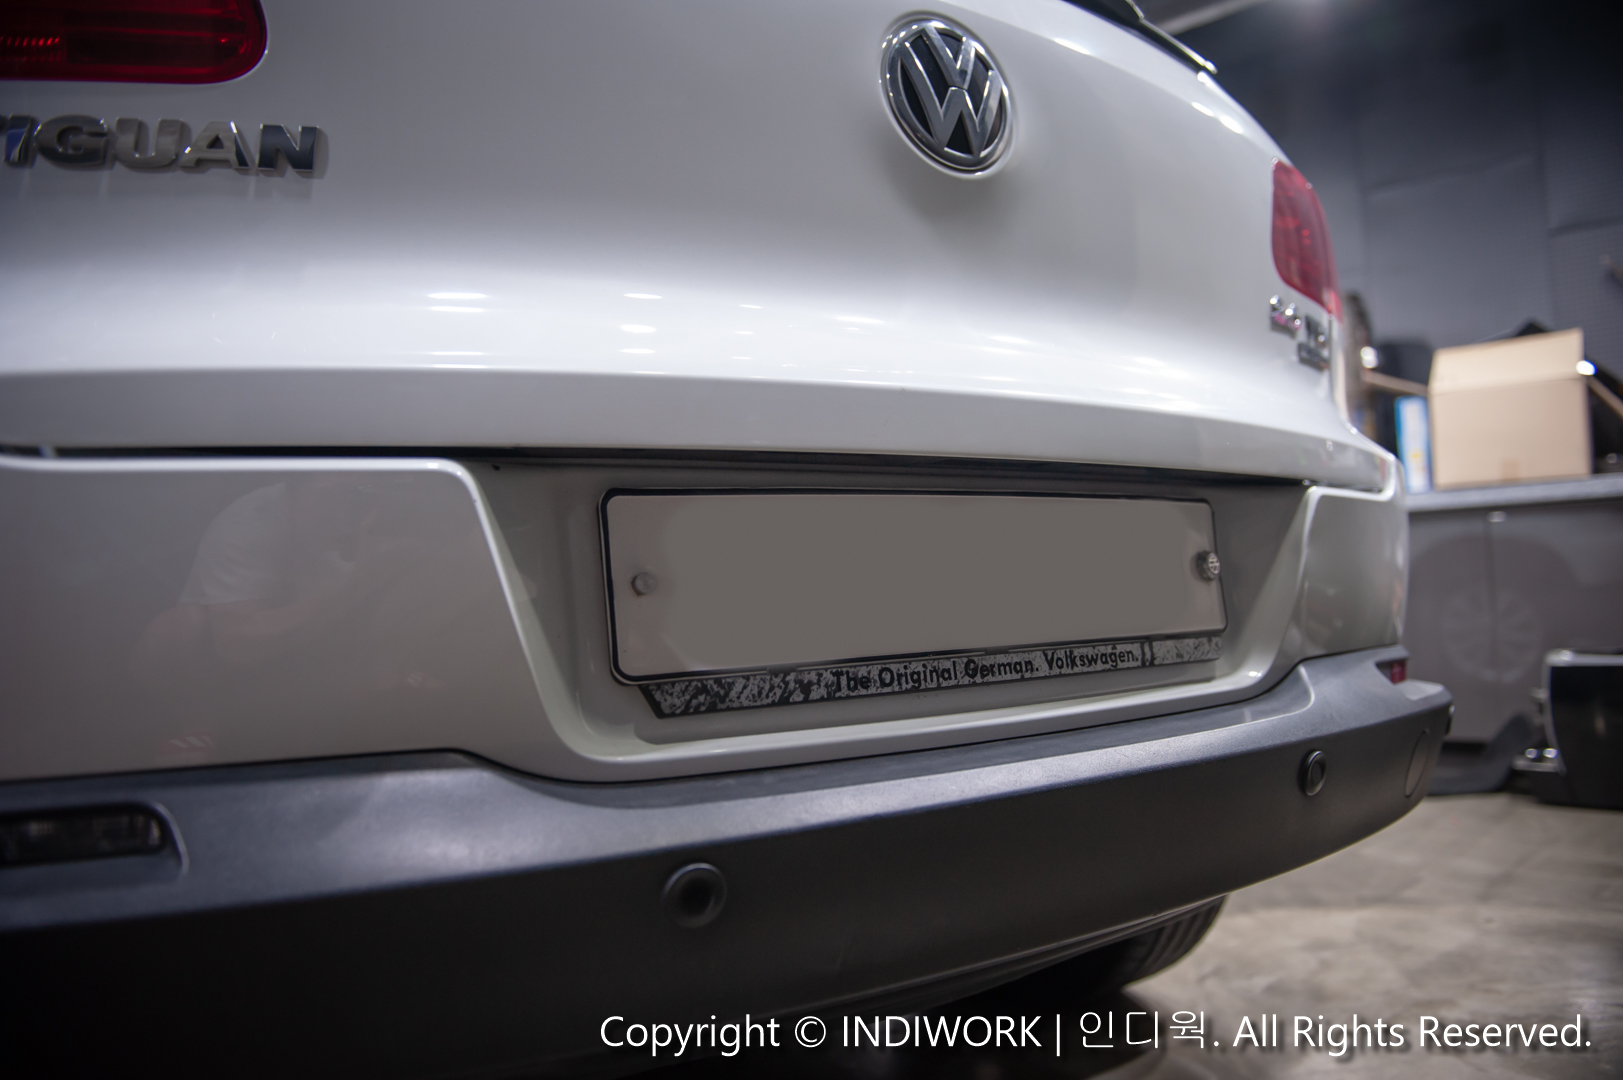 2015 Volkswagen Tiguan exterior